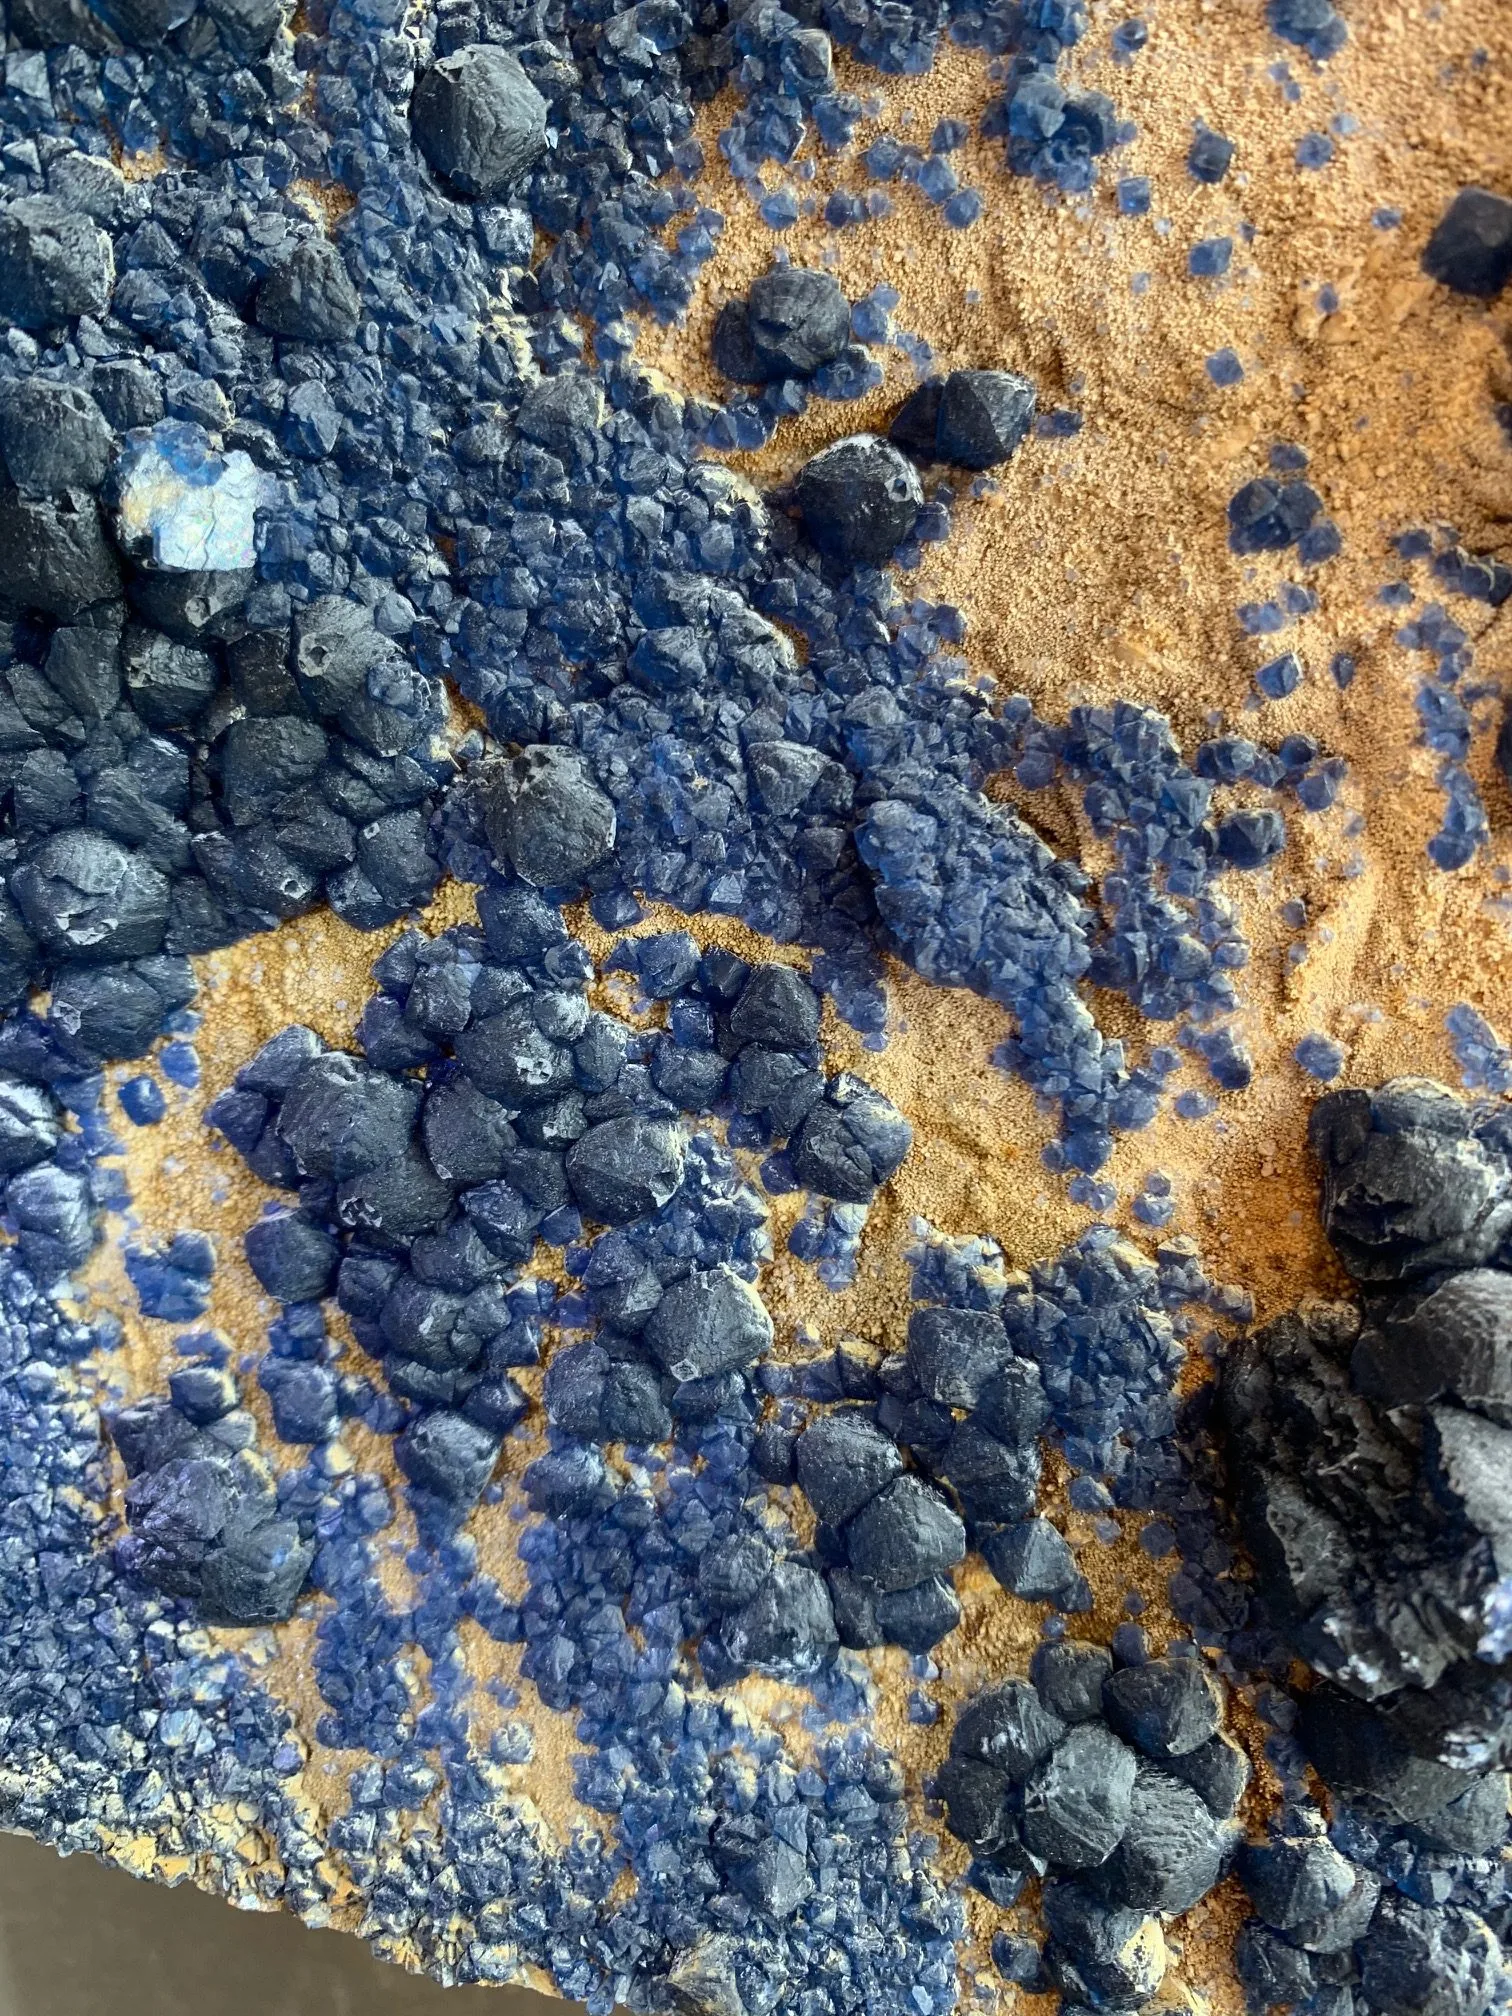 Blue Fluorite specimen Mongolia Prehistoric Online